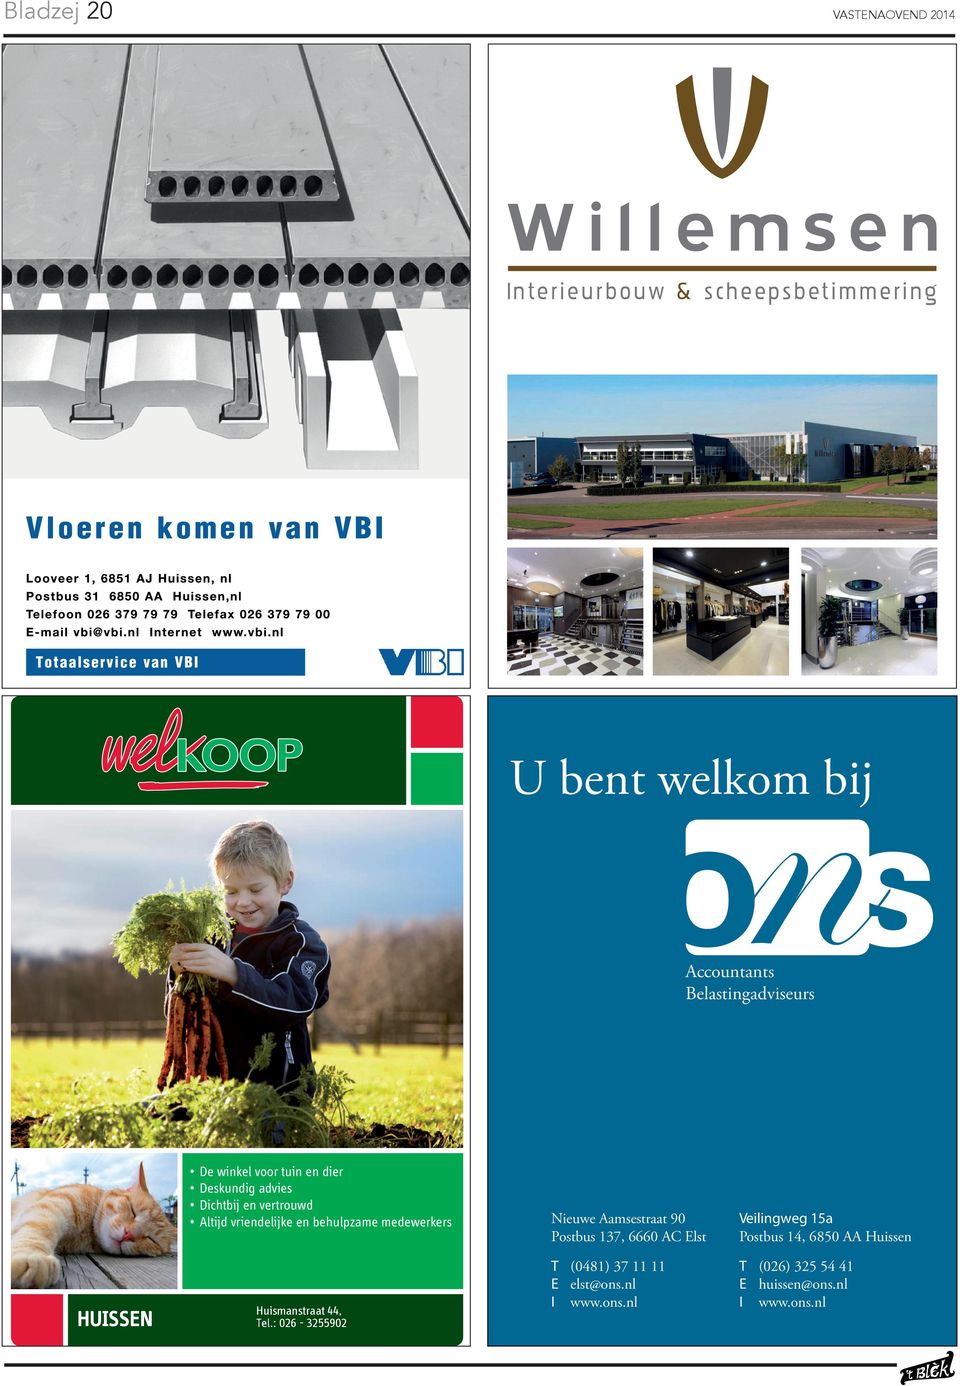 Elst Veilingweg 15a Postbus 14, 6850 AA Huissen HUISSEN Voor meer informatie kijk op: www.boerenbond.